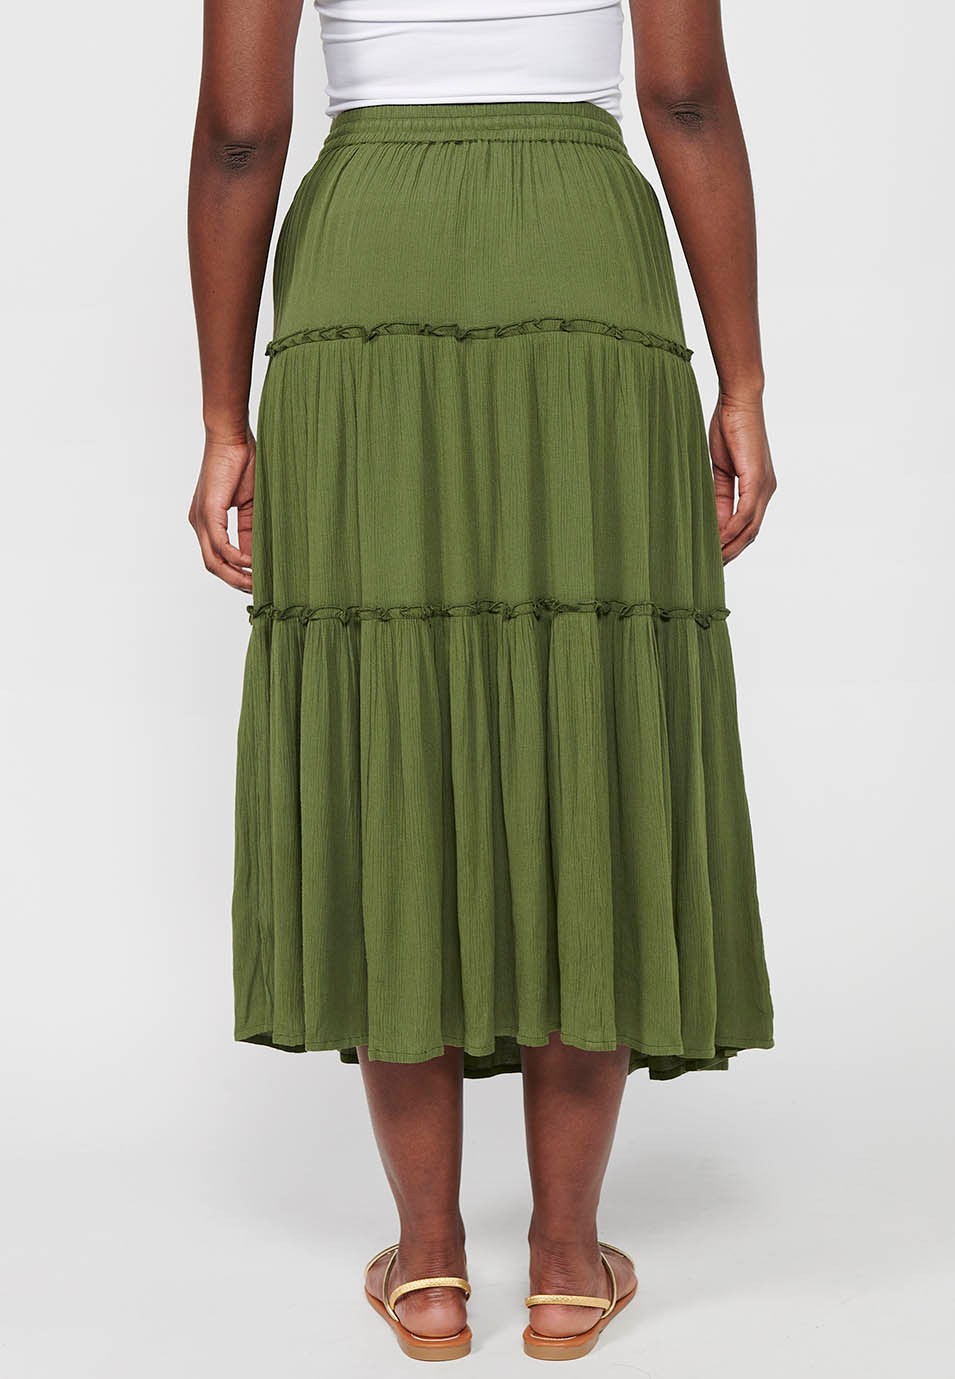 Jupe longue, taille caoutchoutée, couleur verte pour femme